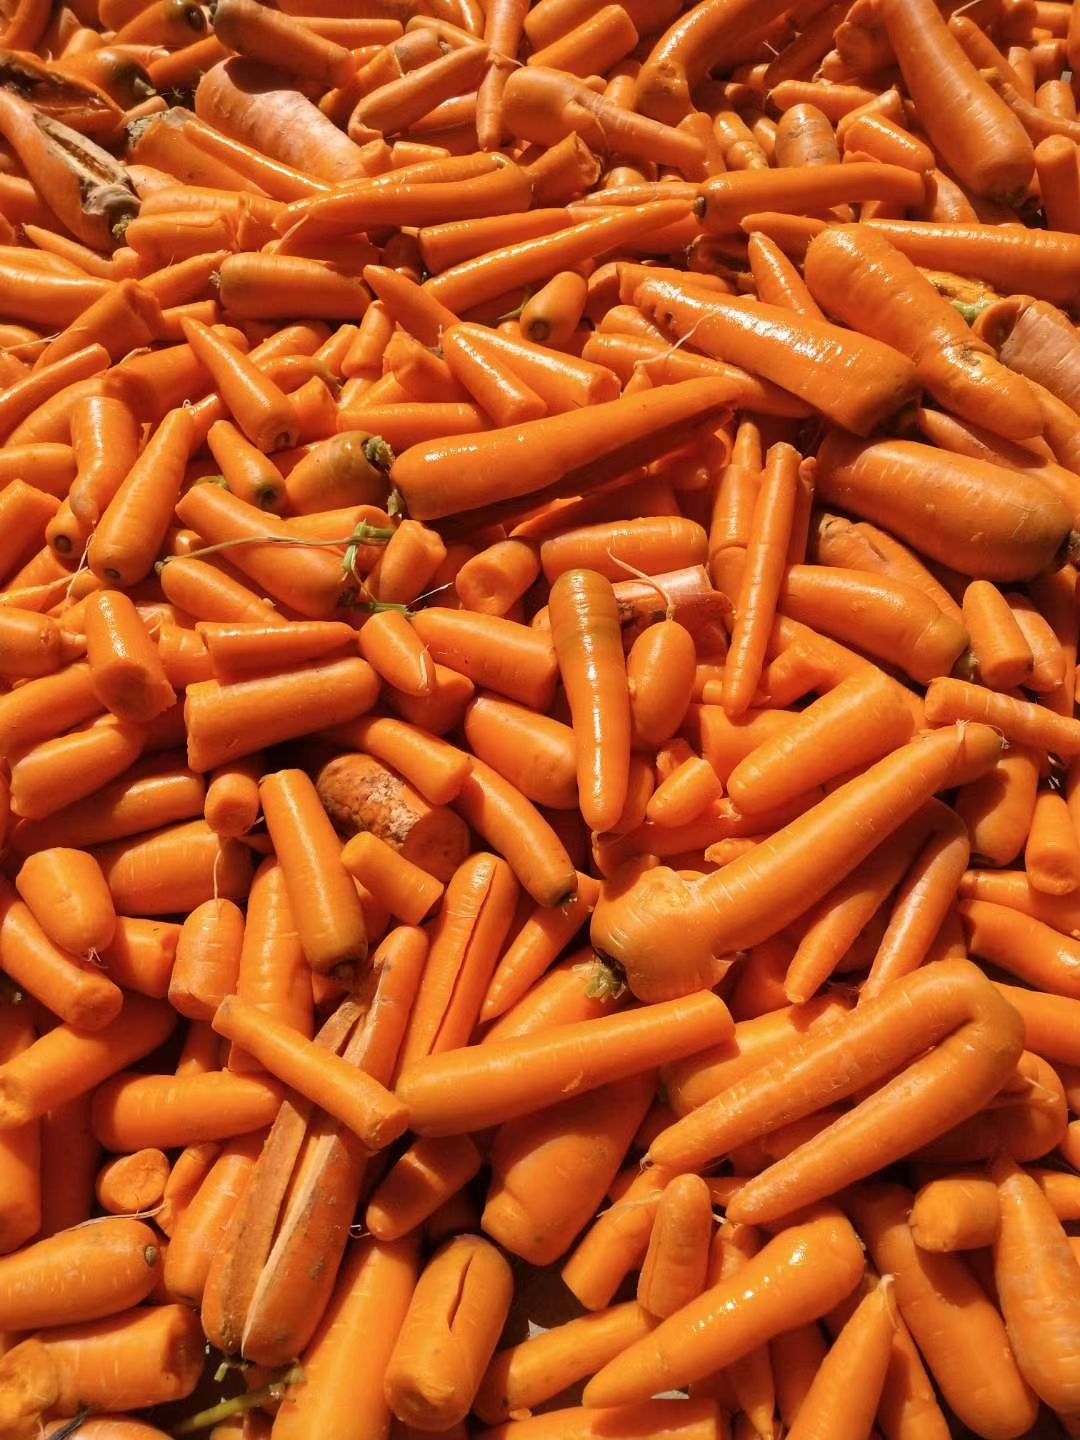 开封三红胡萝卜  次品胡萝卜养殖用，加工厂用胡萝卜。量大优惠，全年供应养殖蔬菜